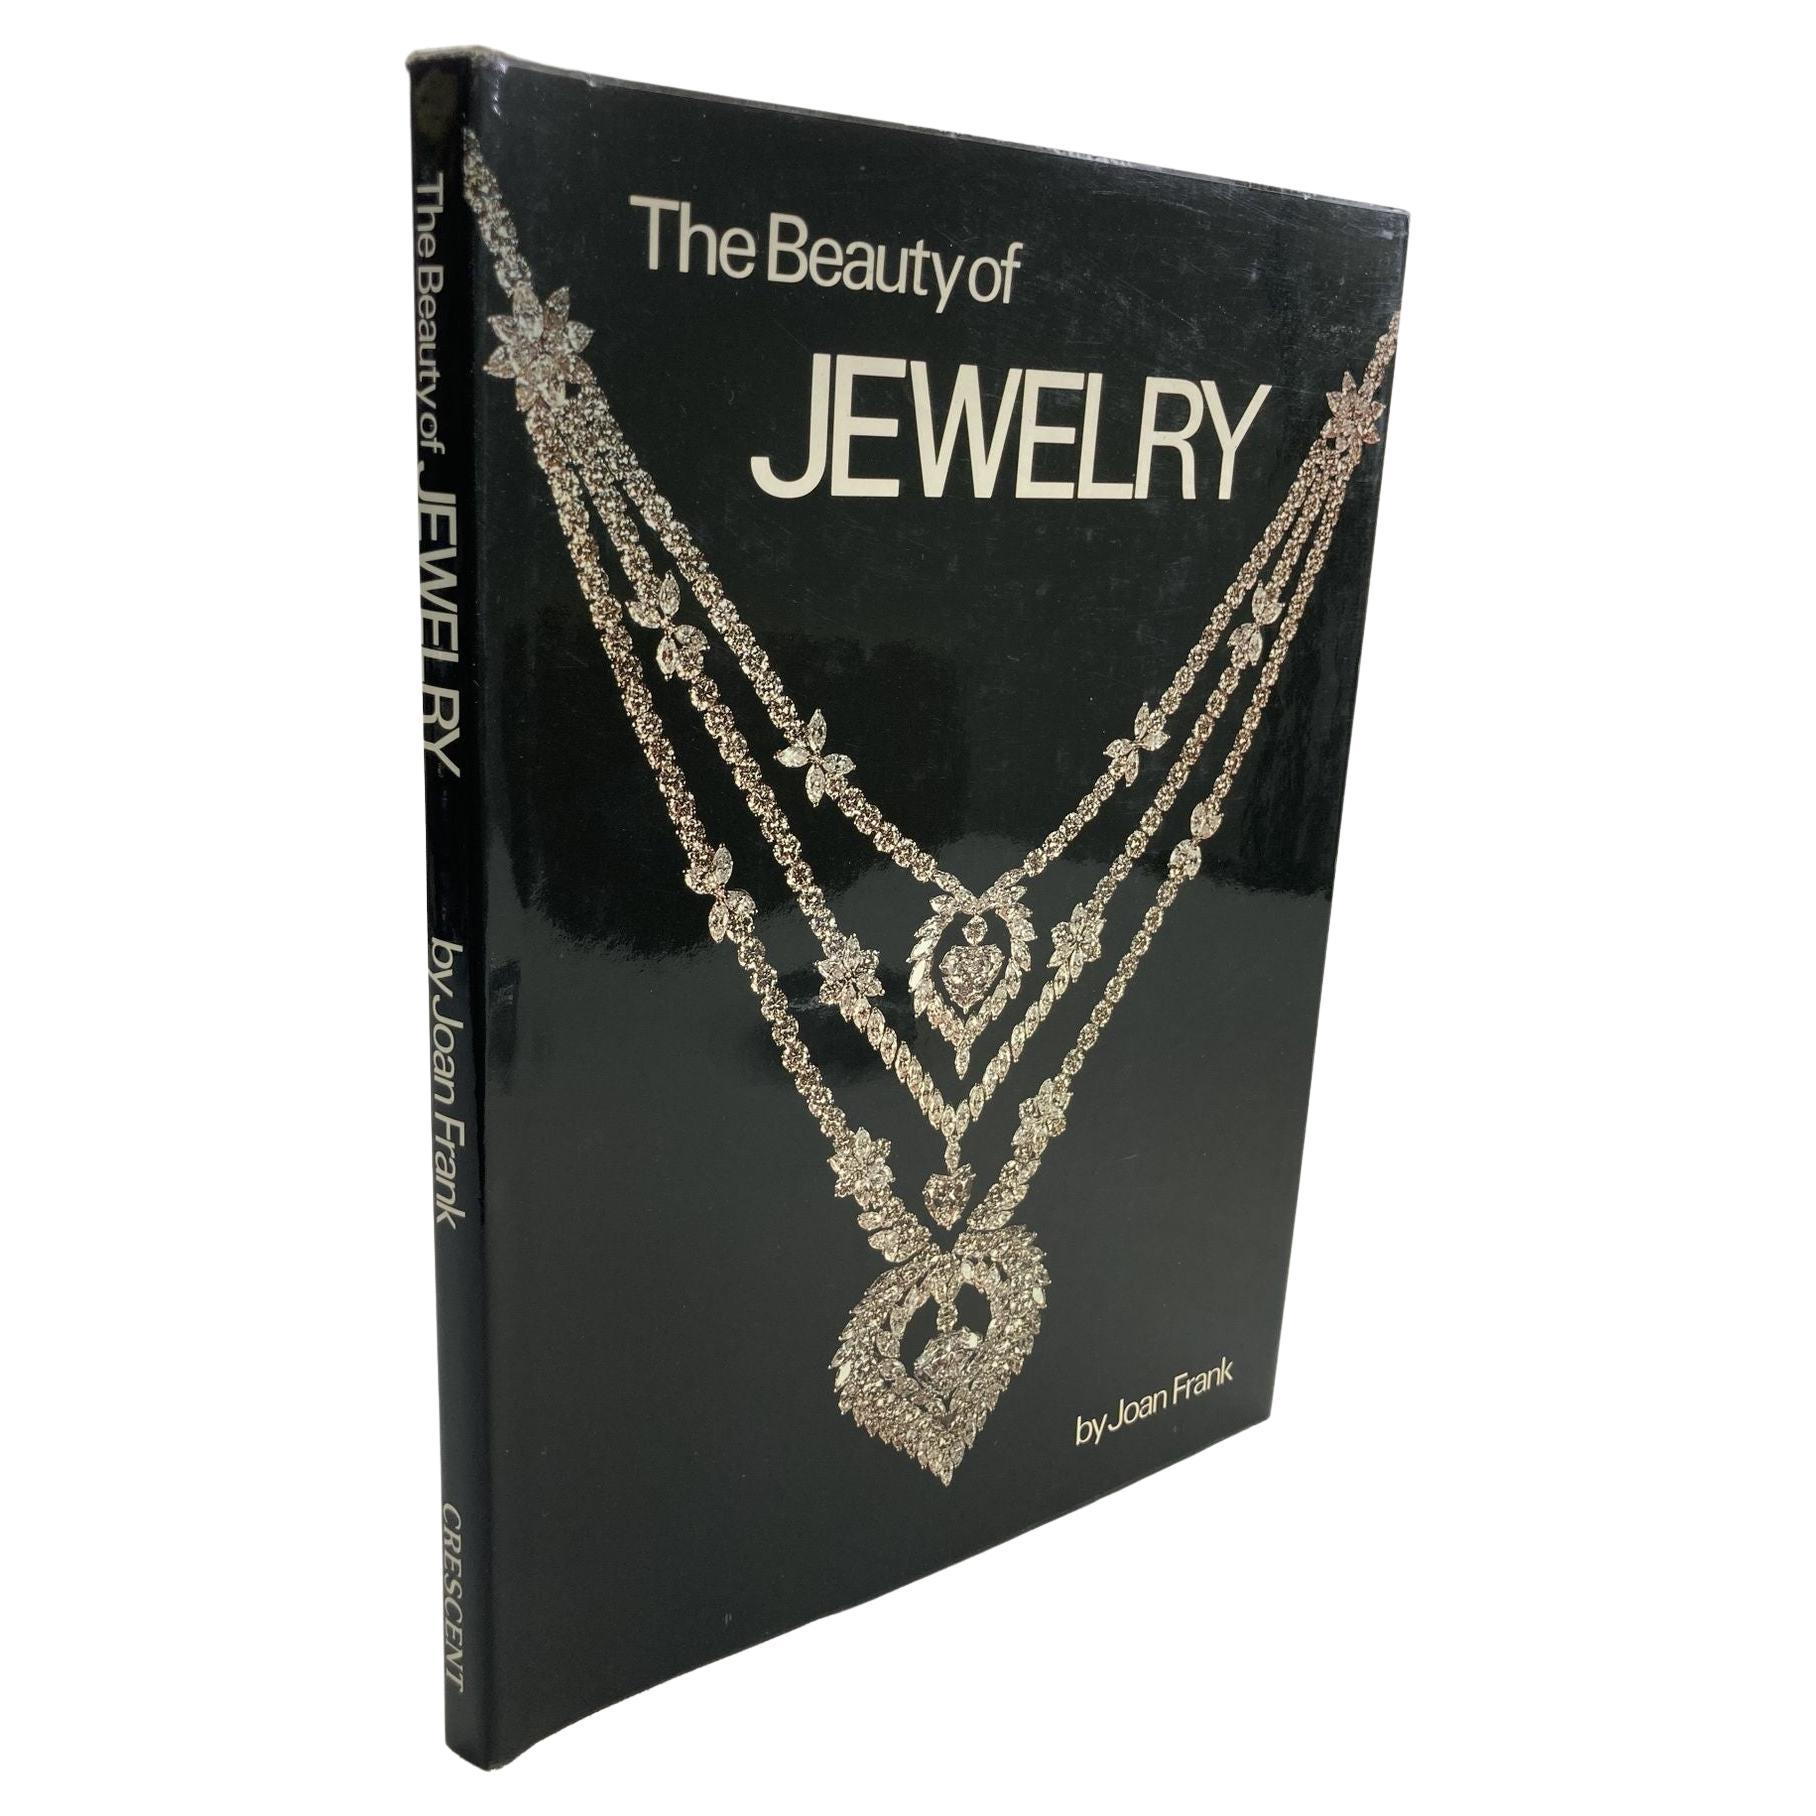 The Beauty of Jewelry (La beauté des bijoux), livre de Joan Frank, 1979